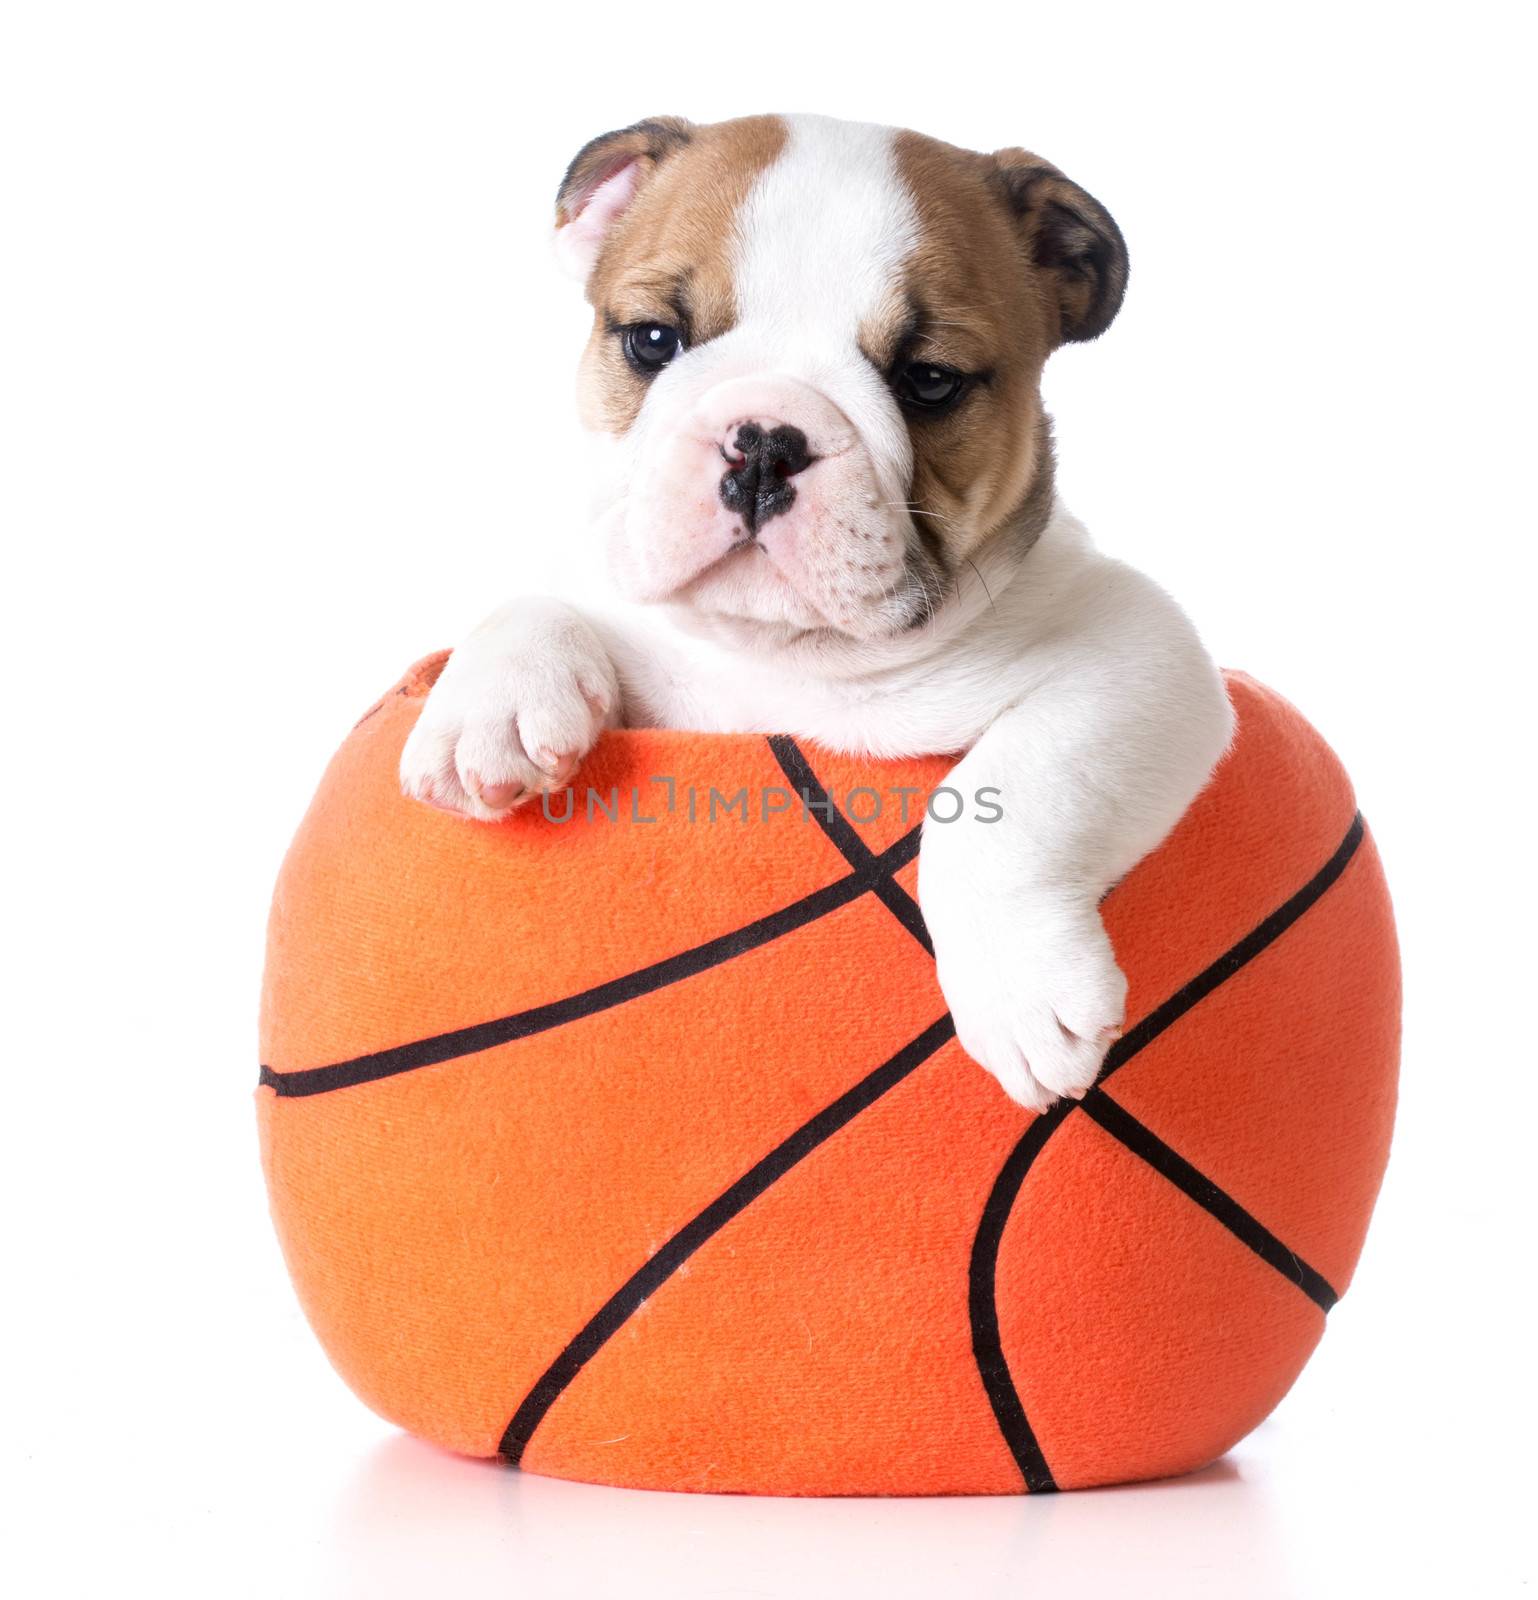 sports hound - bulldog puppy sitting inside a plush stuffed basketball